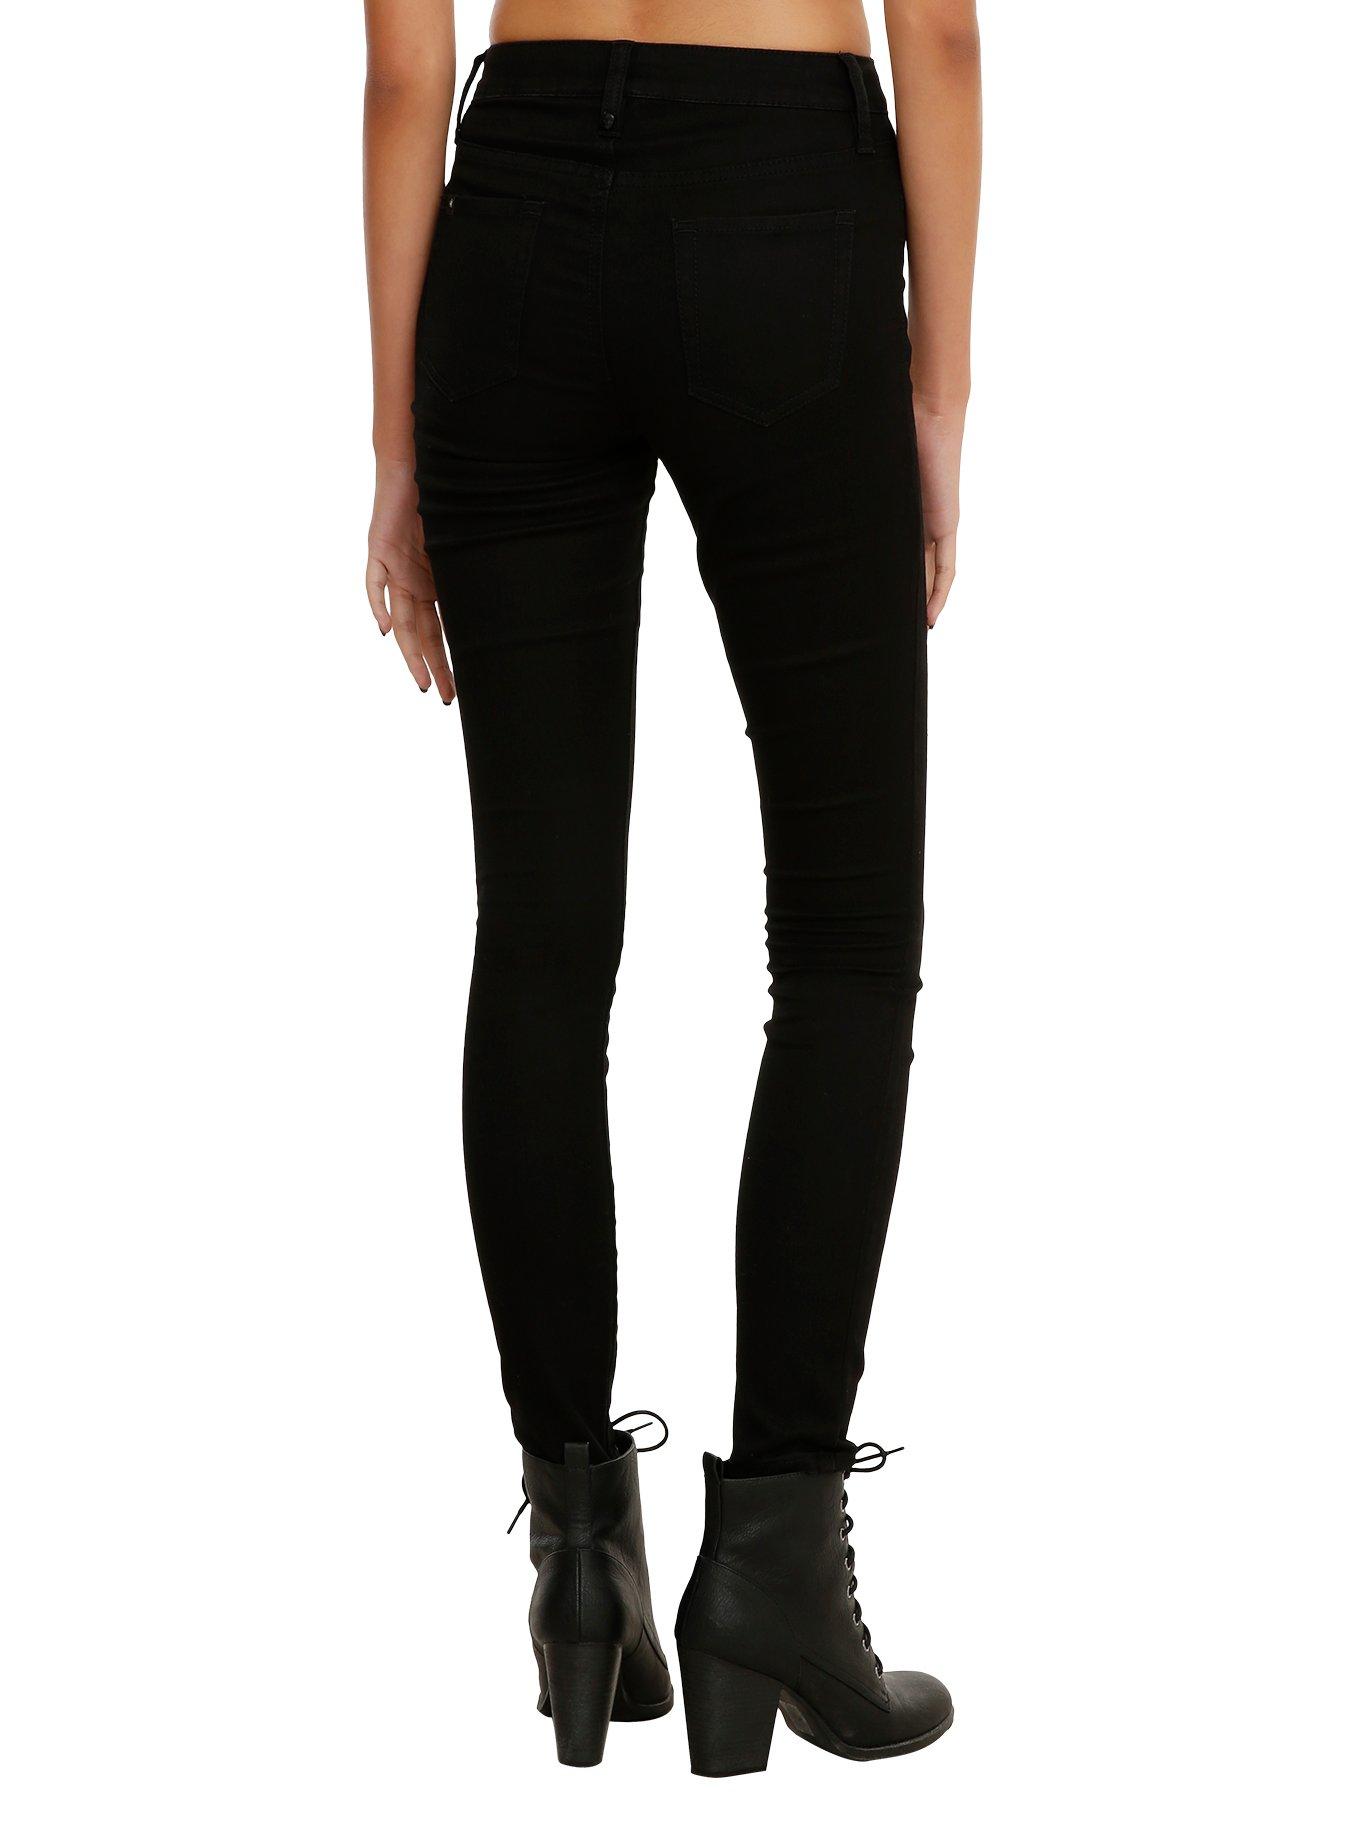 LOVEsick Black High-Waist Super Skinny Jeans, , alternate